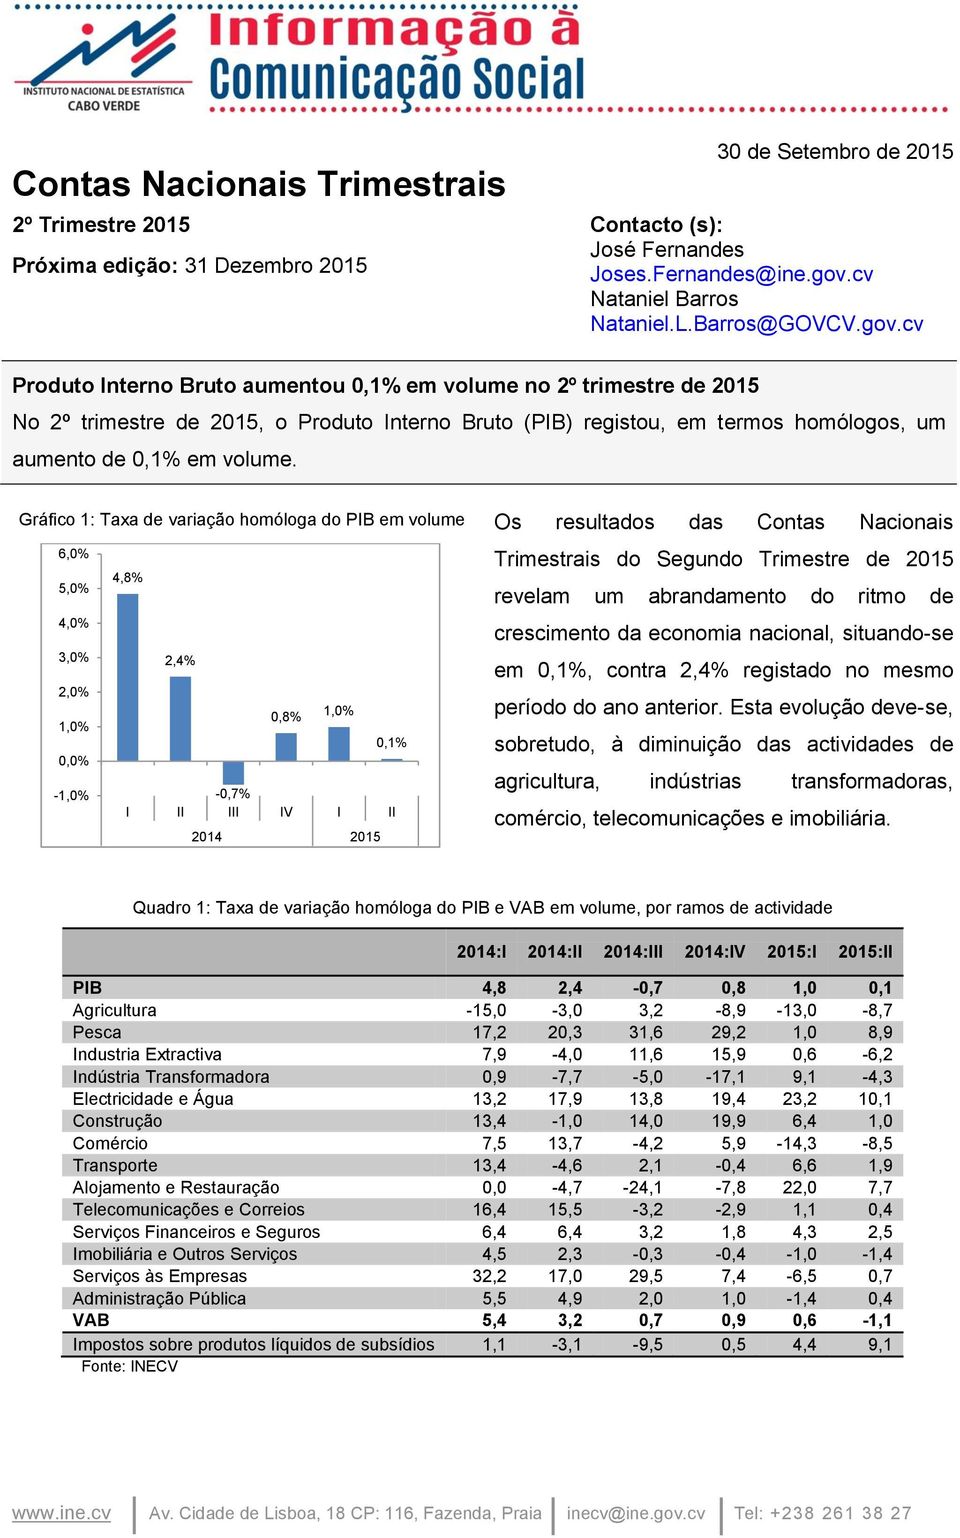 Gráfico 1: Taxa de variação homóloga do PIB em volume Os resultados das Contas Nacionais 6,0% 5,0% 4,0% 3,0% 2,0% 0,0% - 4,8% 2,4% 0,8% 0,1% -0,7% I II III IV I II 2014 2015 Trimestrais do Segundo